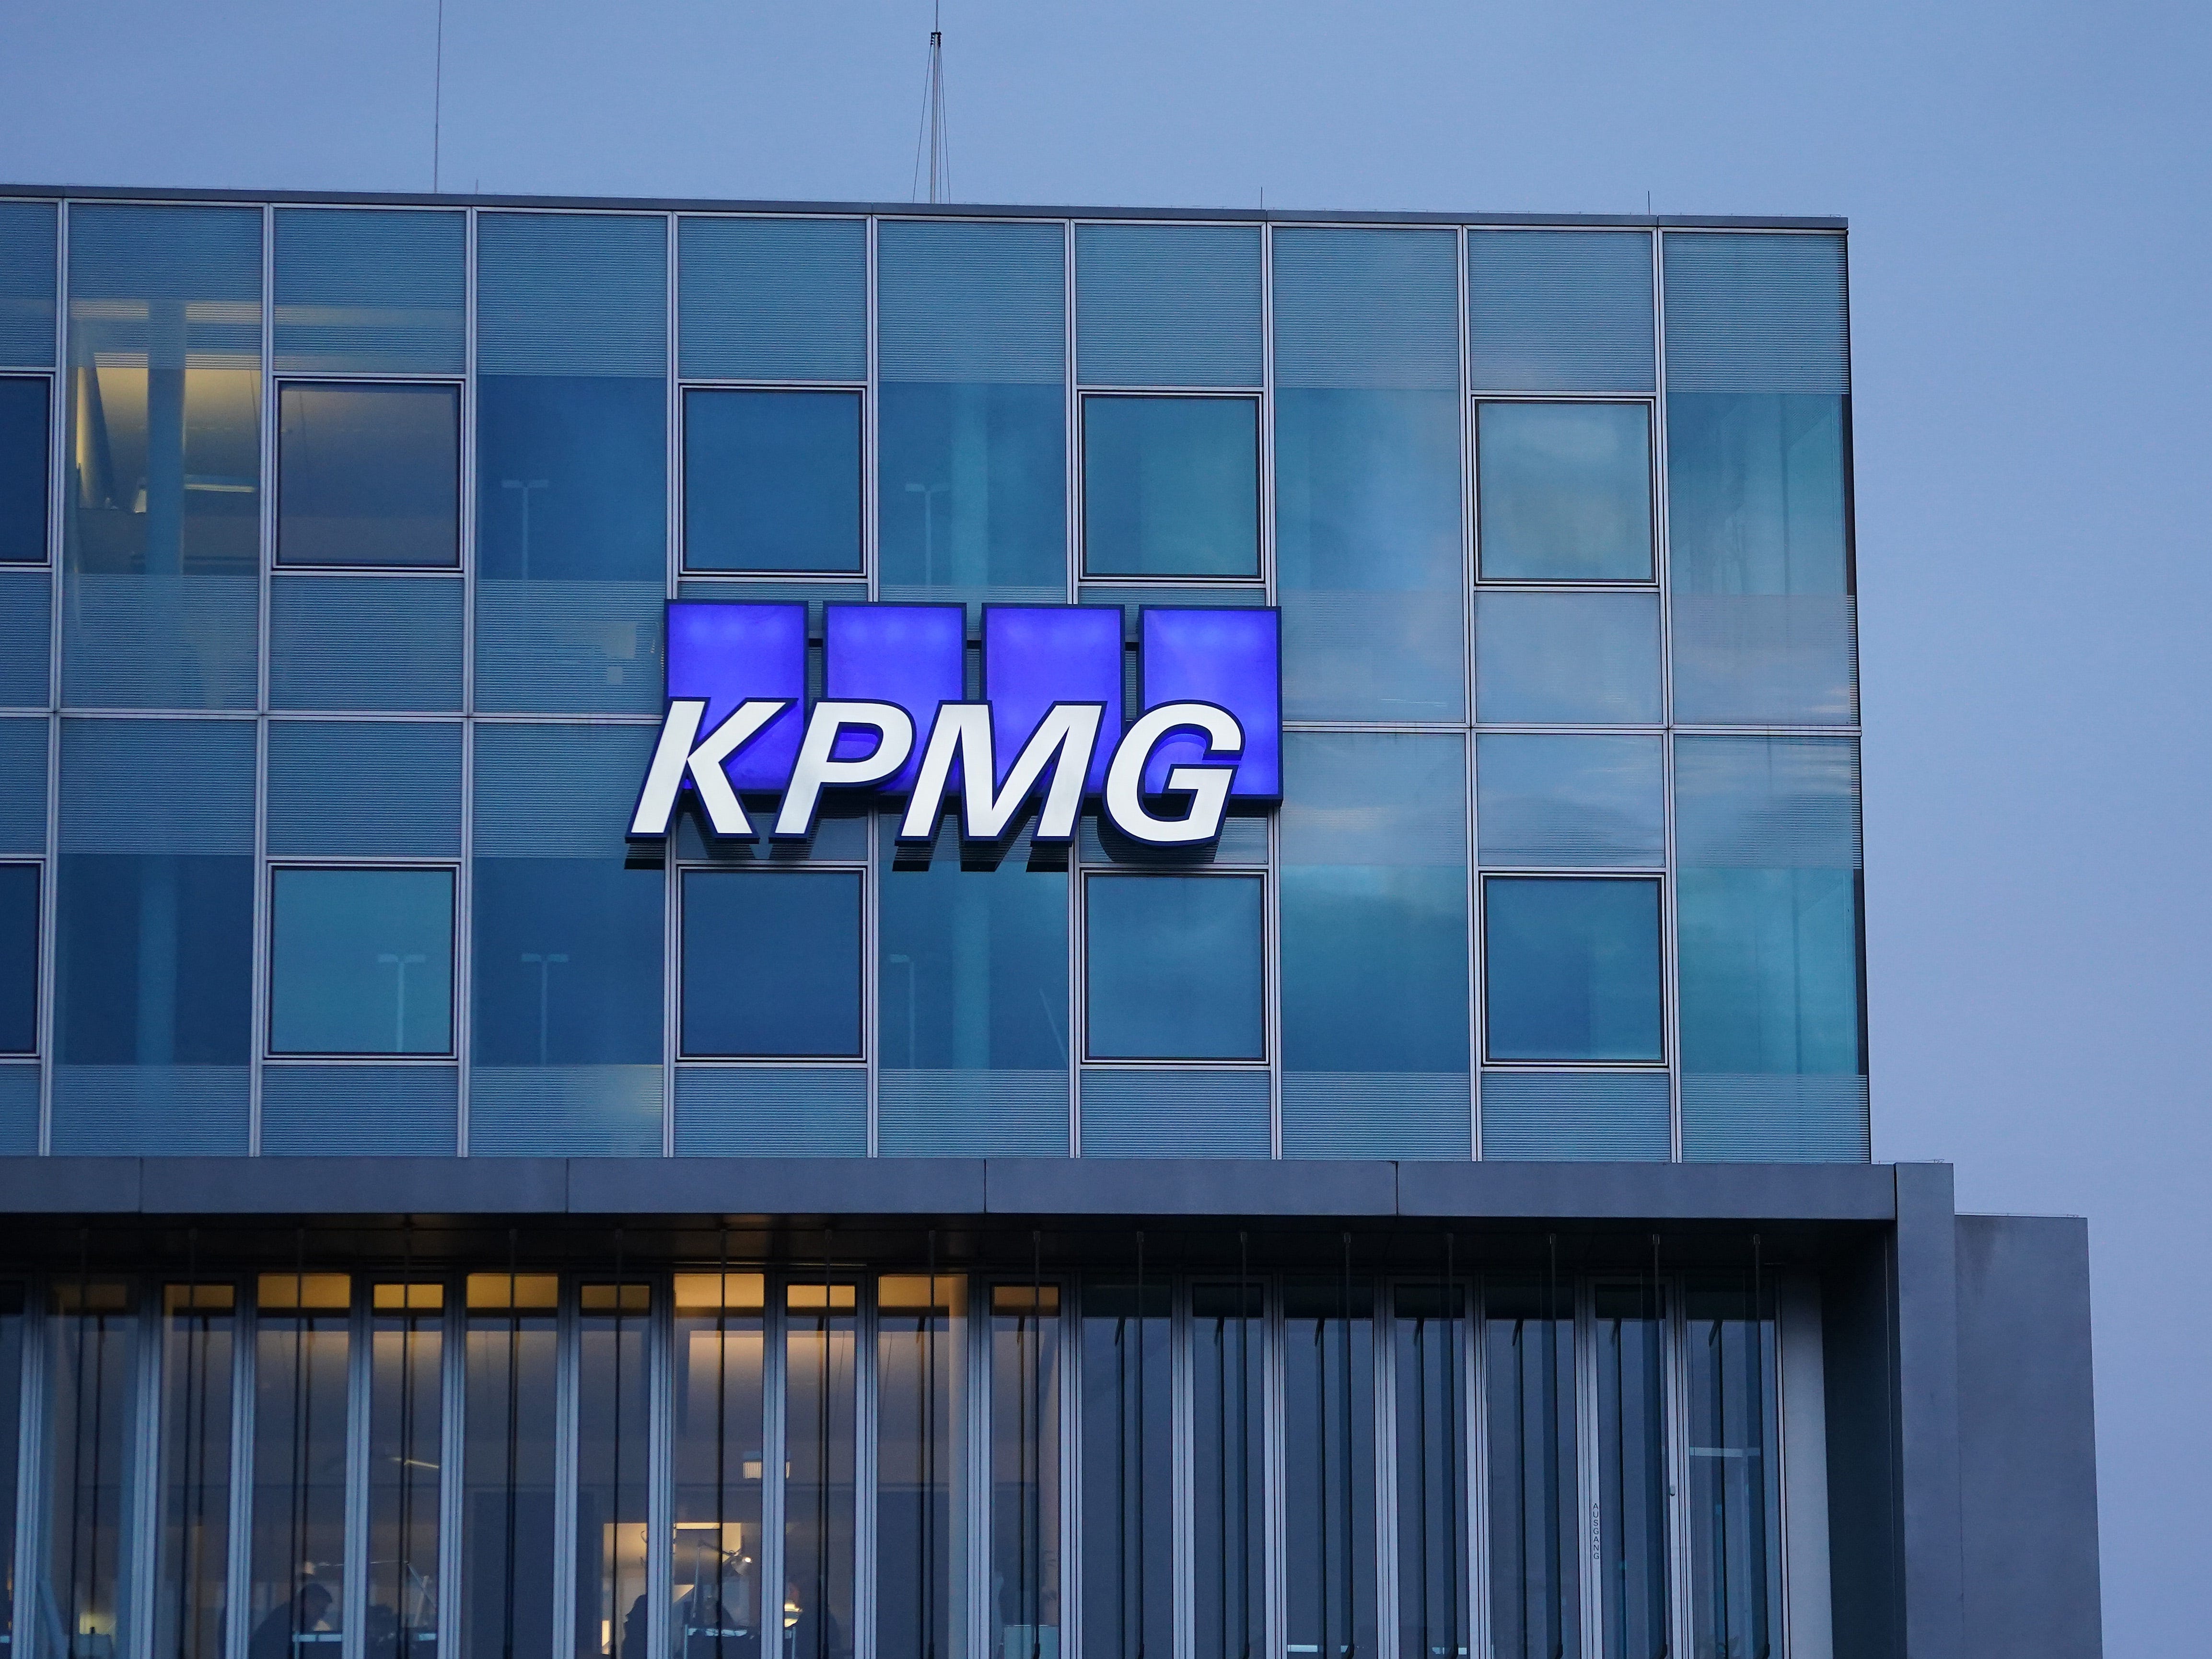 Das Logo von KPMG, einem multinationalen Steuerberatungs- und Buchhaltungsdienstleistungsunternehmen, hängt am 22. Januar 2021 an der Fassade eines KPMG-Bürogebäudes in Berlin, Deutschland.